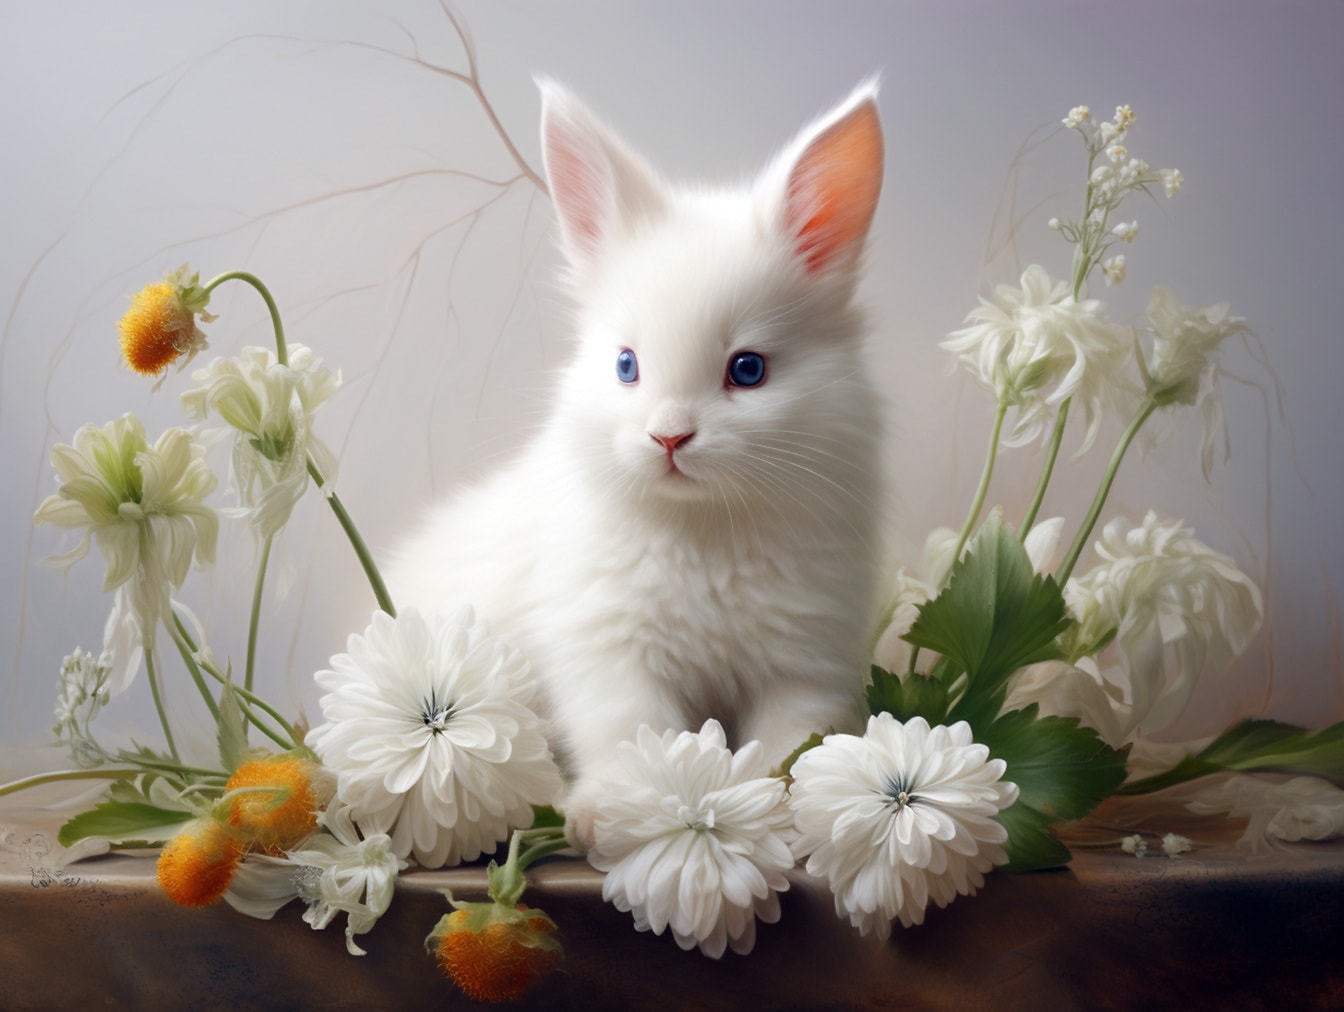 กระต่ายสีขาวน่ารักที่มีดวงตาสีฟ้าในดอกไม้